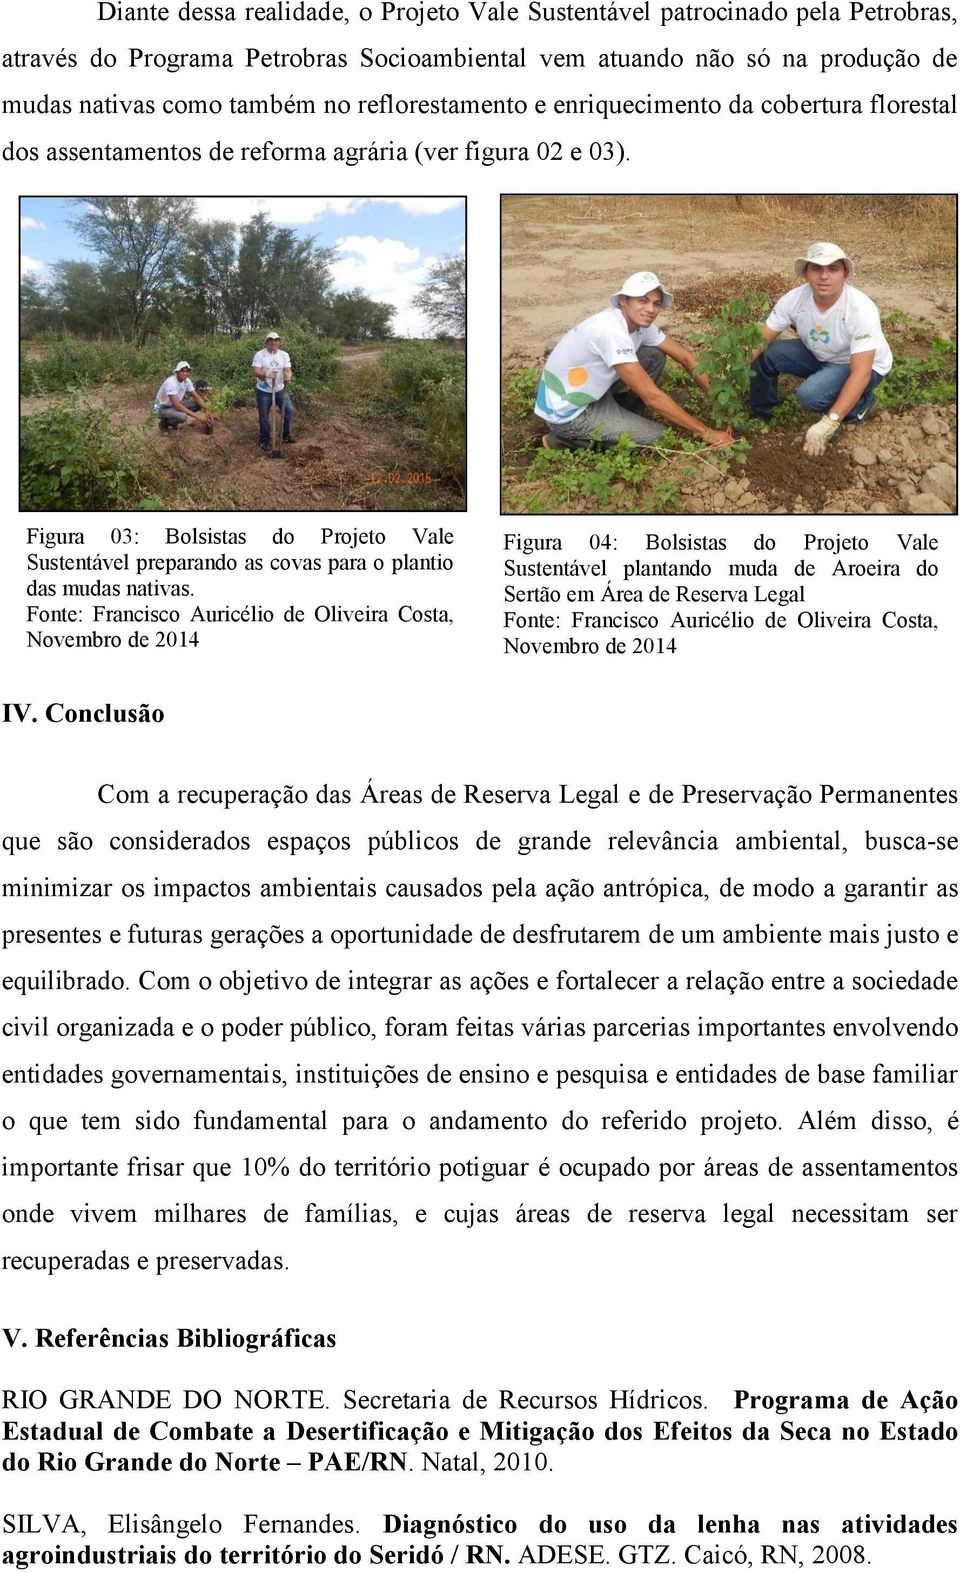 Figura 03: Bolsistas do Projeto Vale Sustentável preparando as covas para o plantio das mudas nativas.